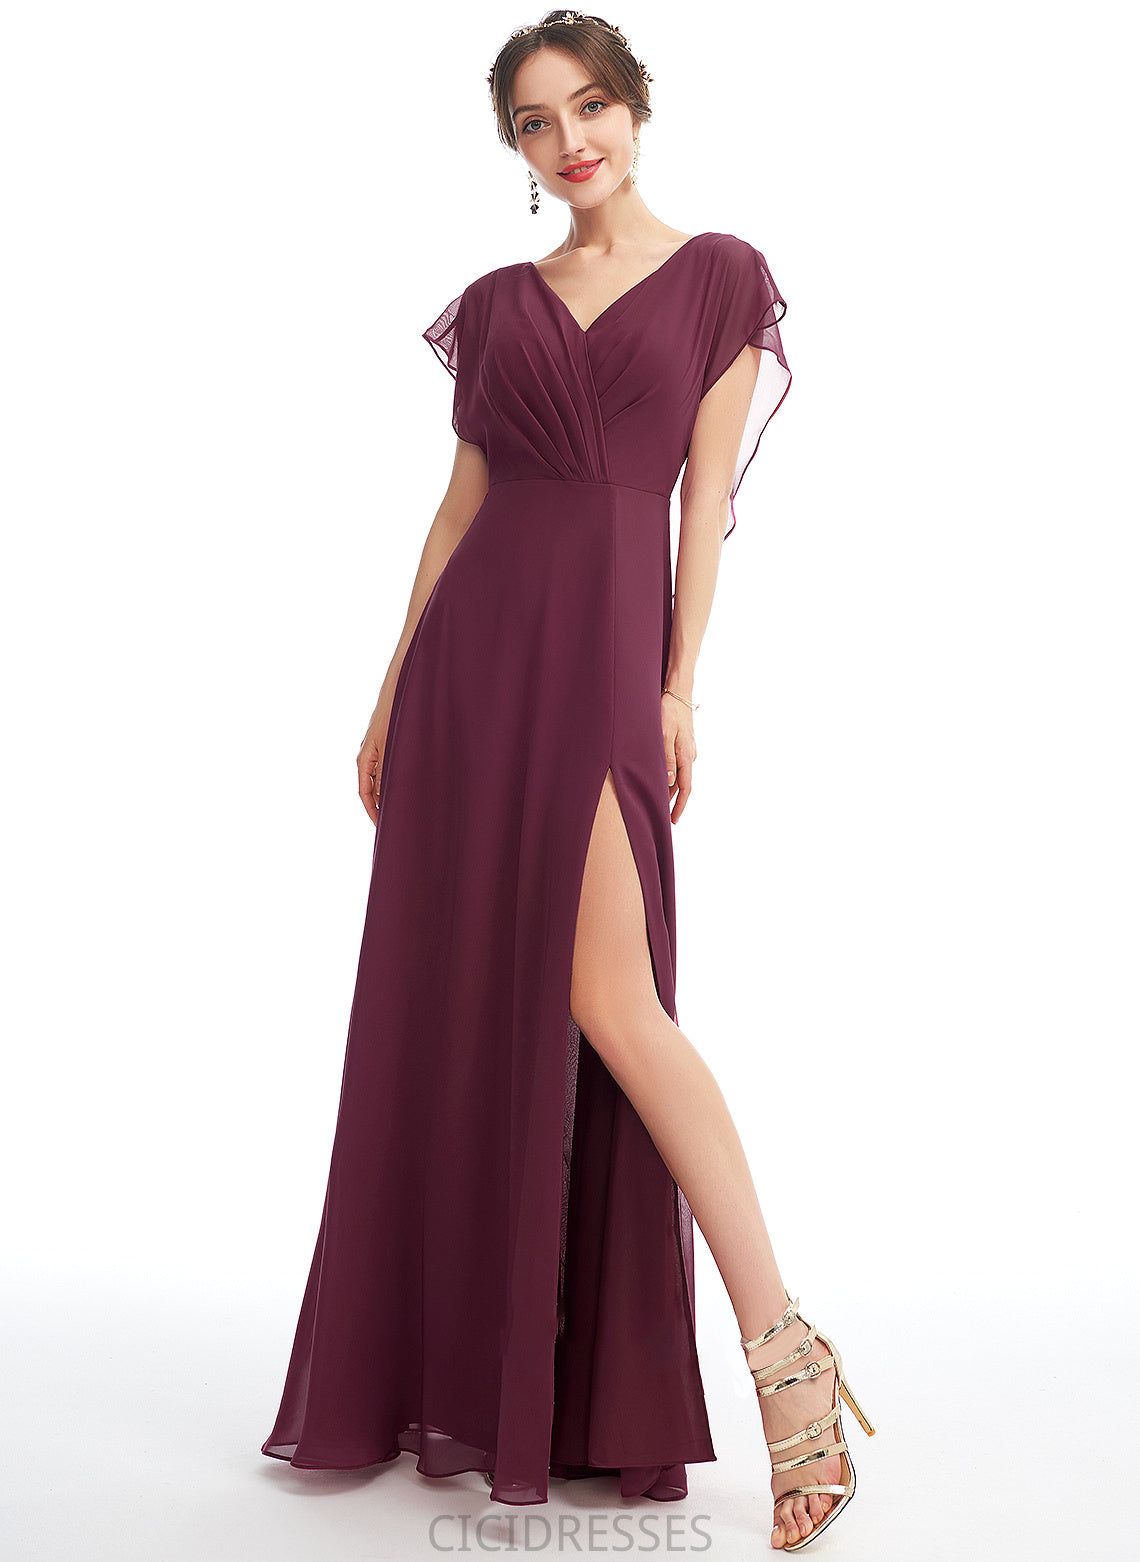 Ruffle Length Fabric SplitFront Neckline Embellishment Floor-Length V-neck Silhouette A-Line Janet V-Neck Bridesmaid Dresses